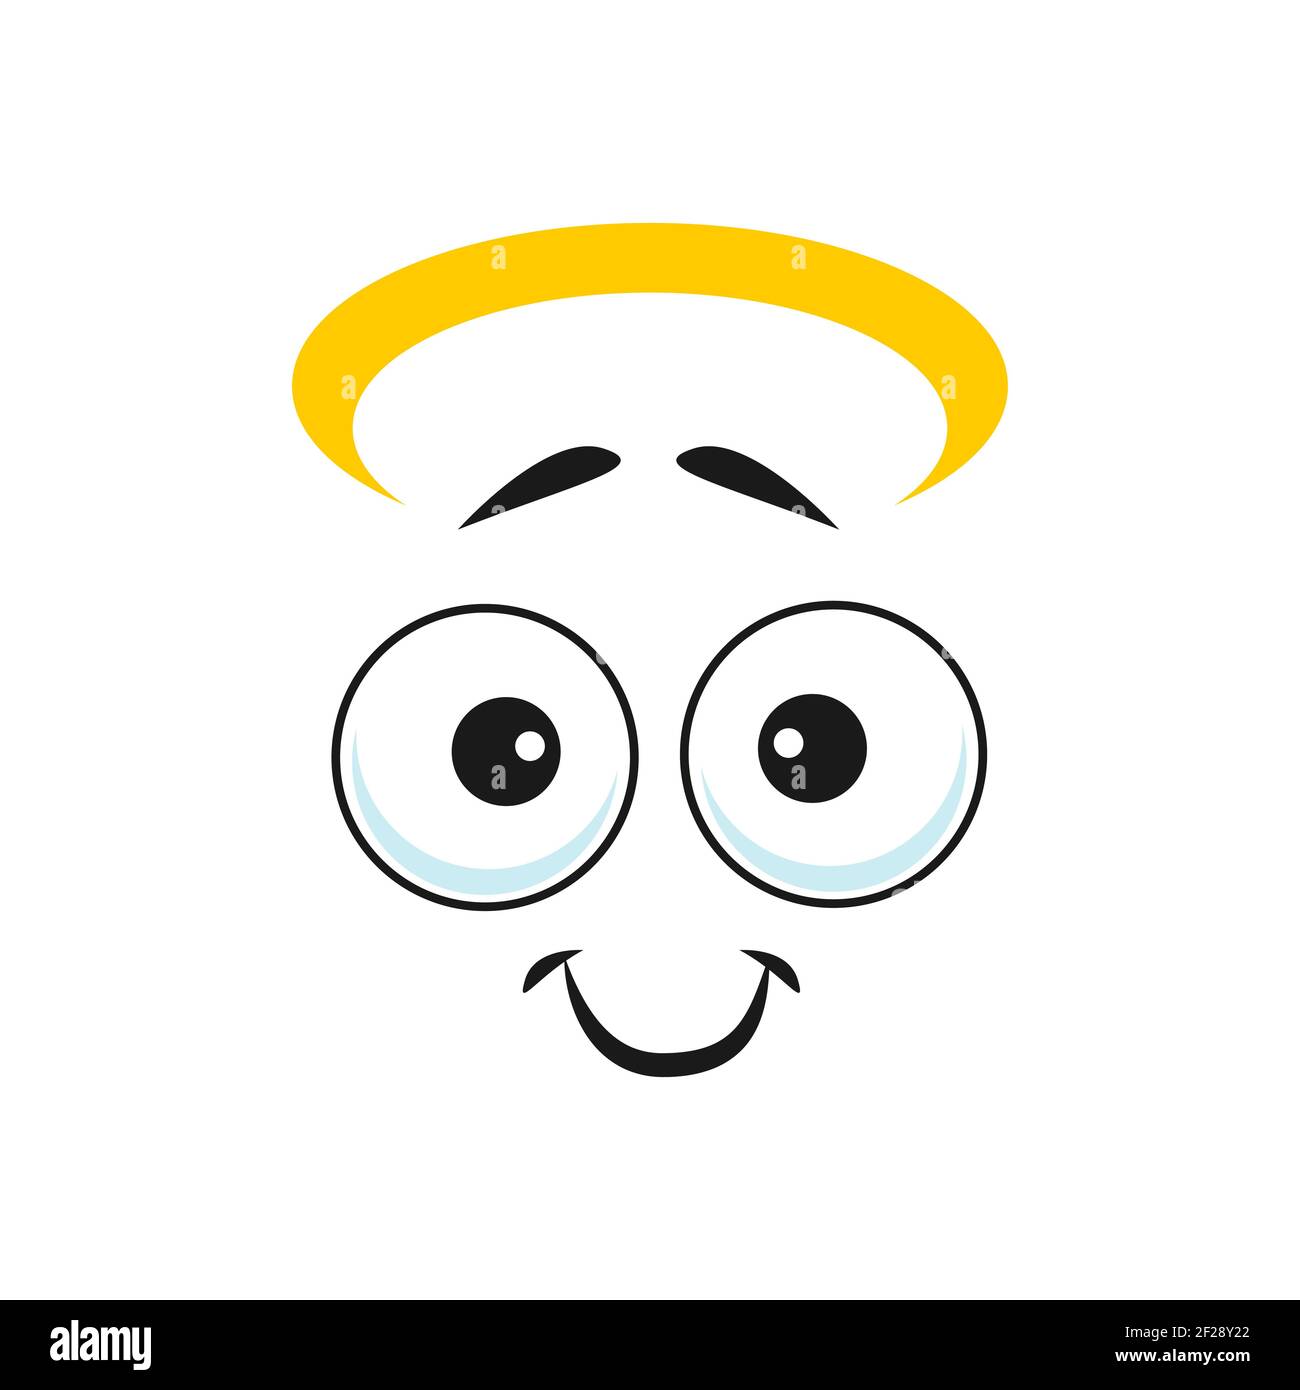 L'angelo cartone animato affronta emoji sorridenti, vettore divertente personaggio santo con nimbus, amichevole scenario sorriso e rotondo occhi gentili. Espressione facciale graziosa, pos Illustrazione Vettoriale